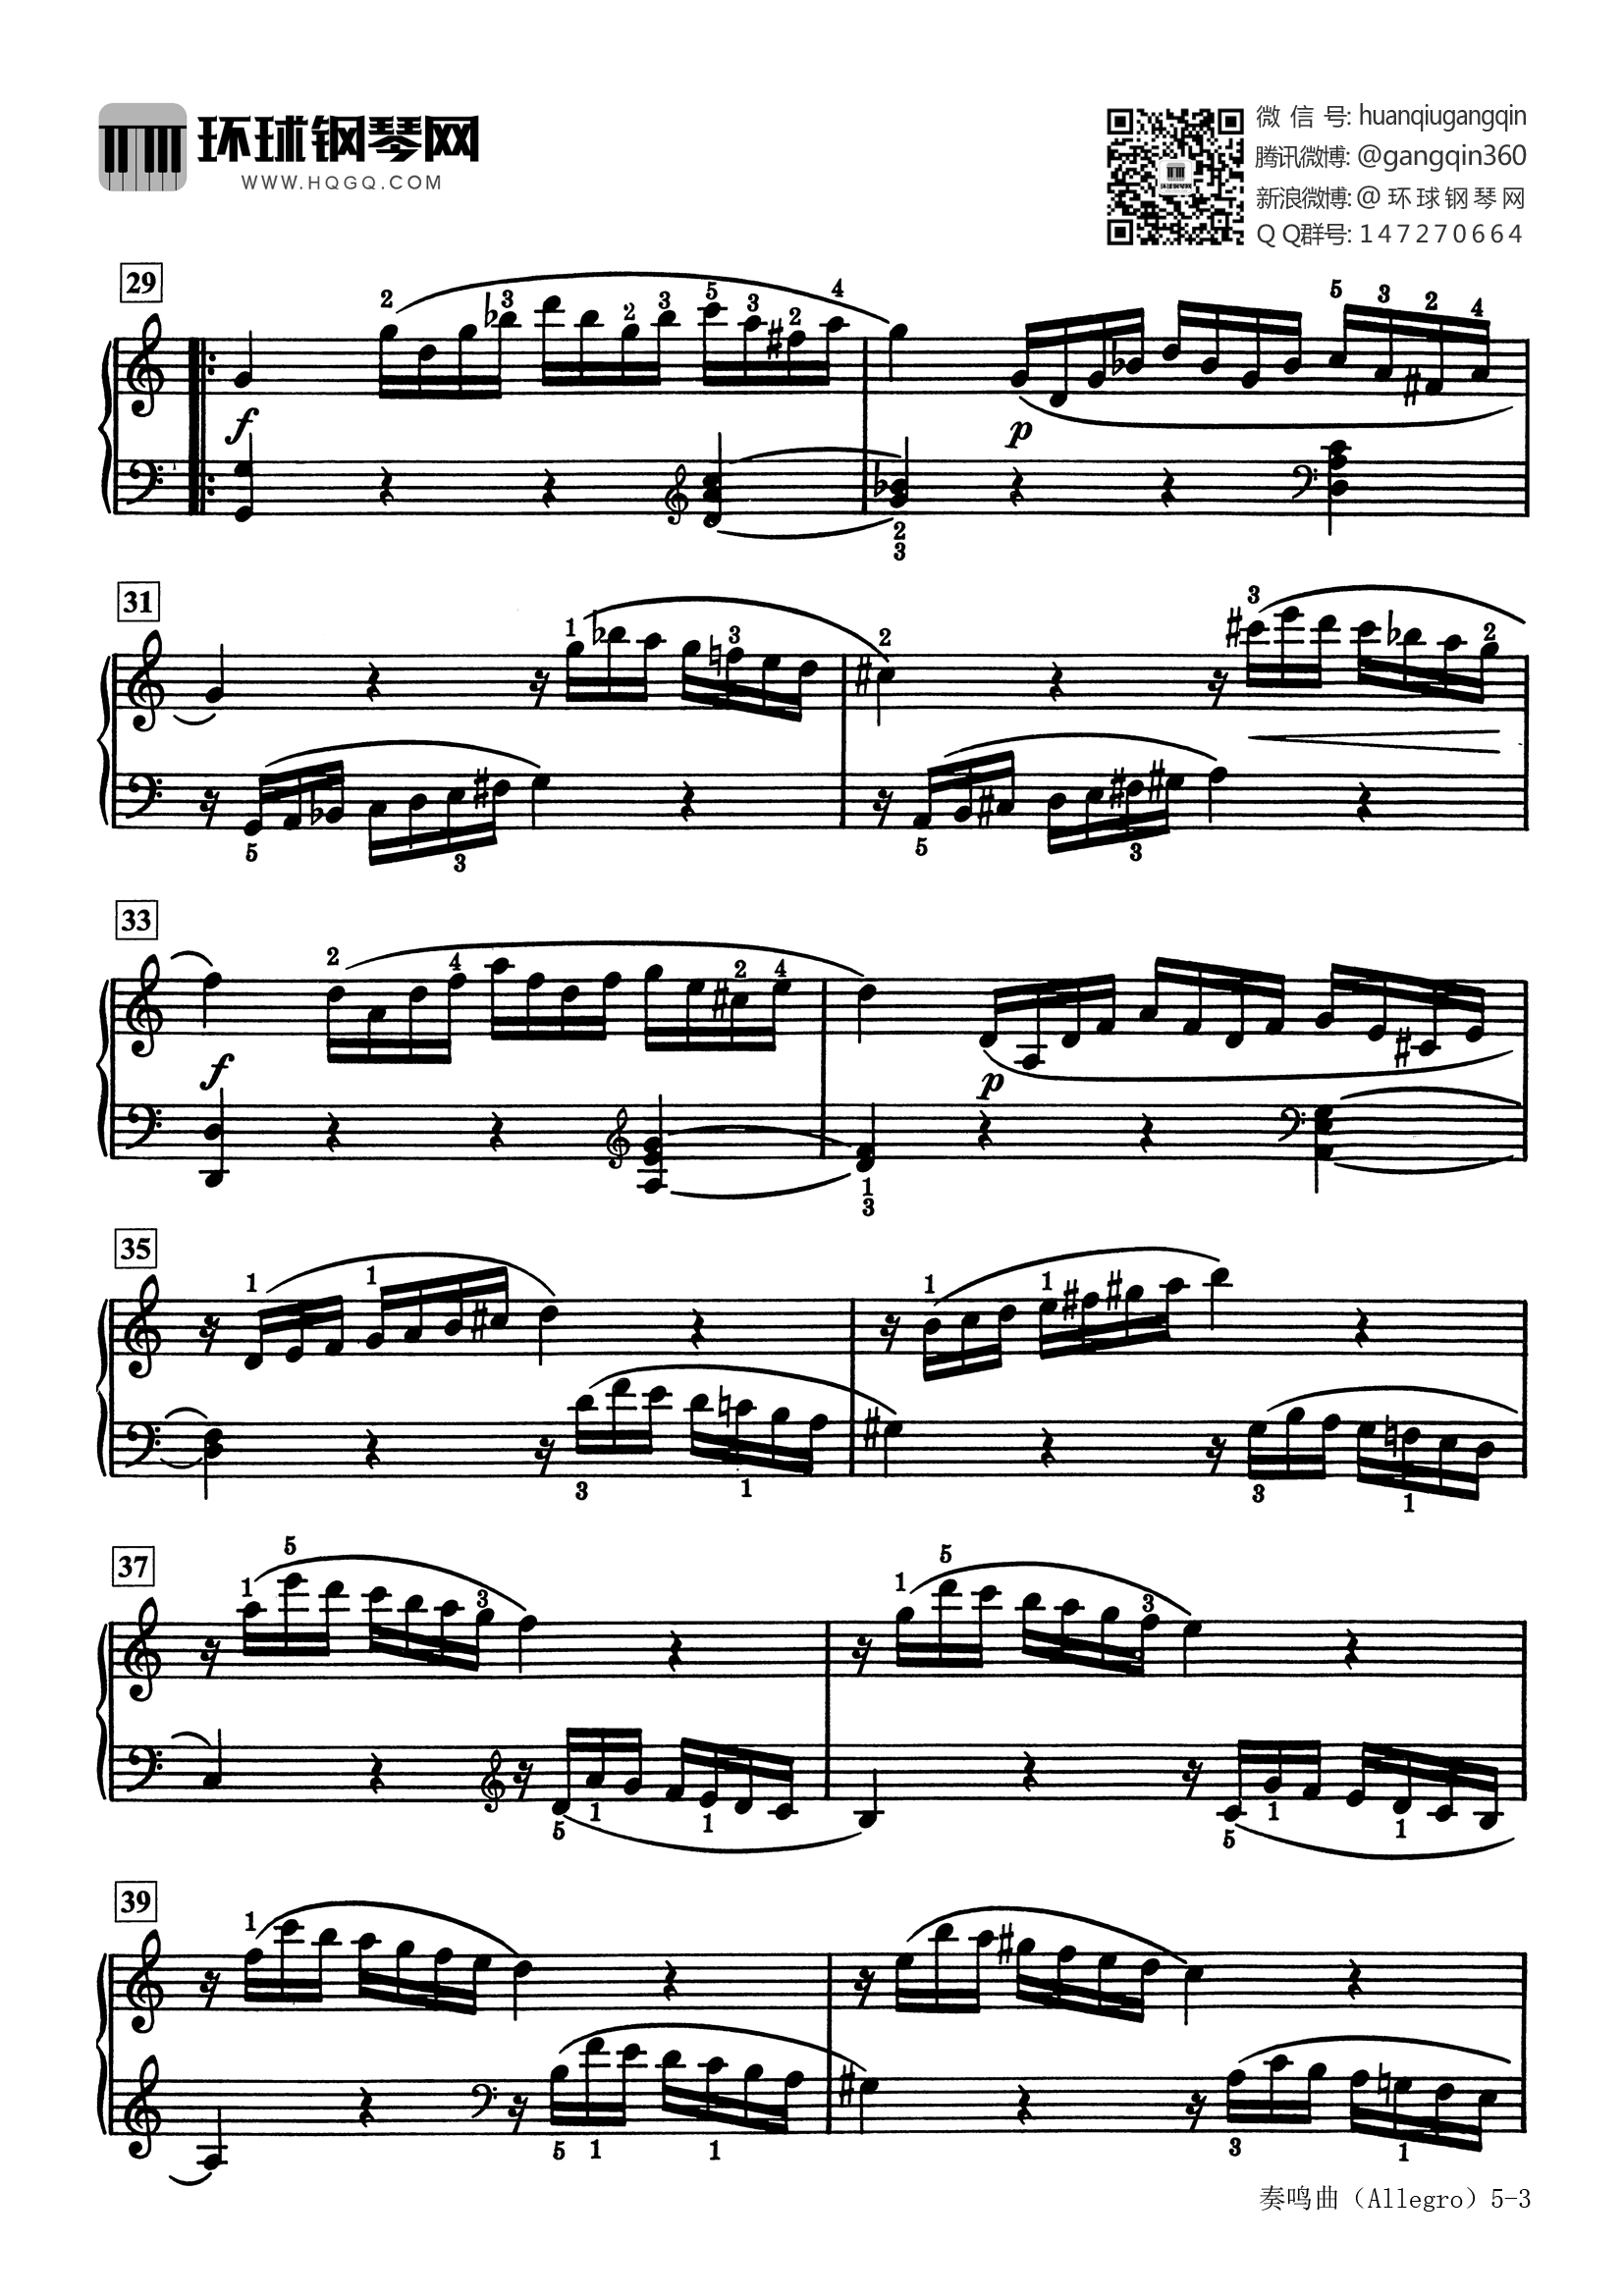 14,奏鸣曲,k545 allegro(选自《巴斯蒂安世界钢琴名曲集3》)